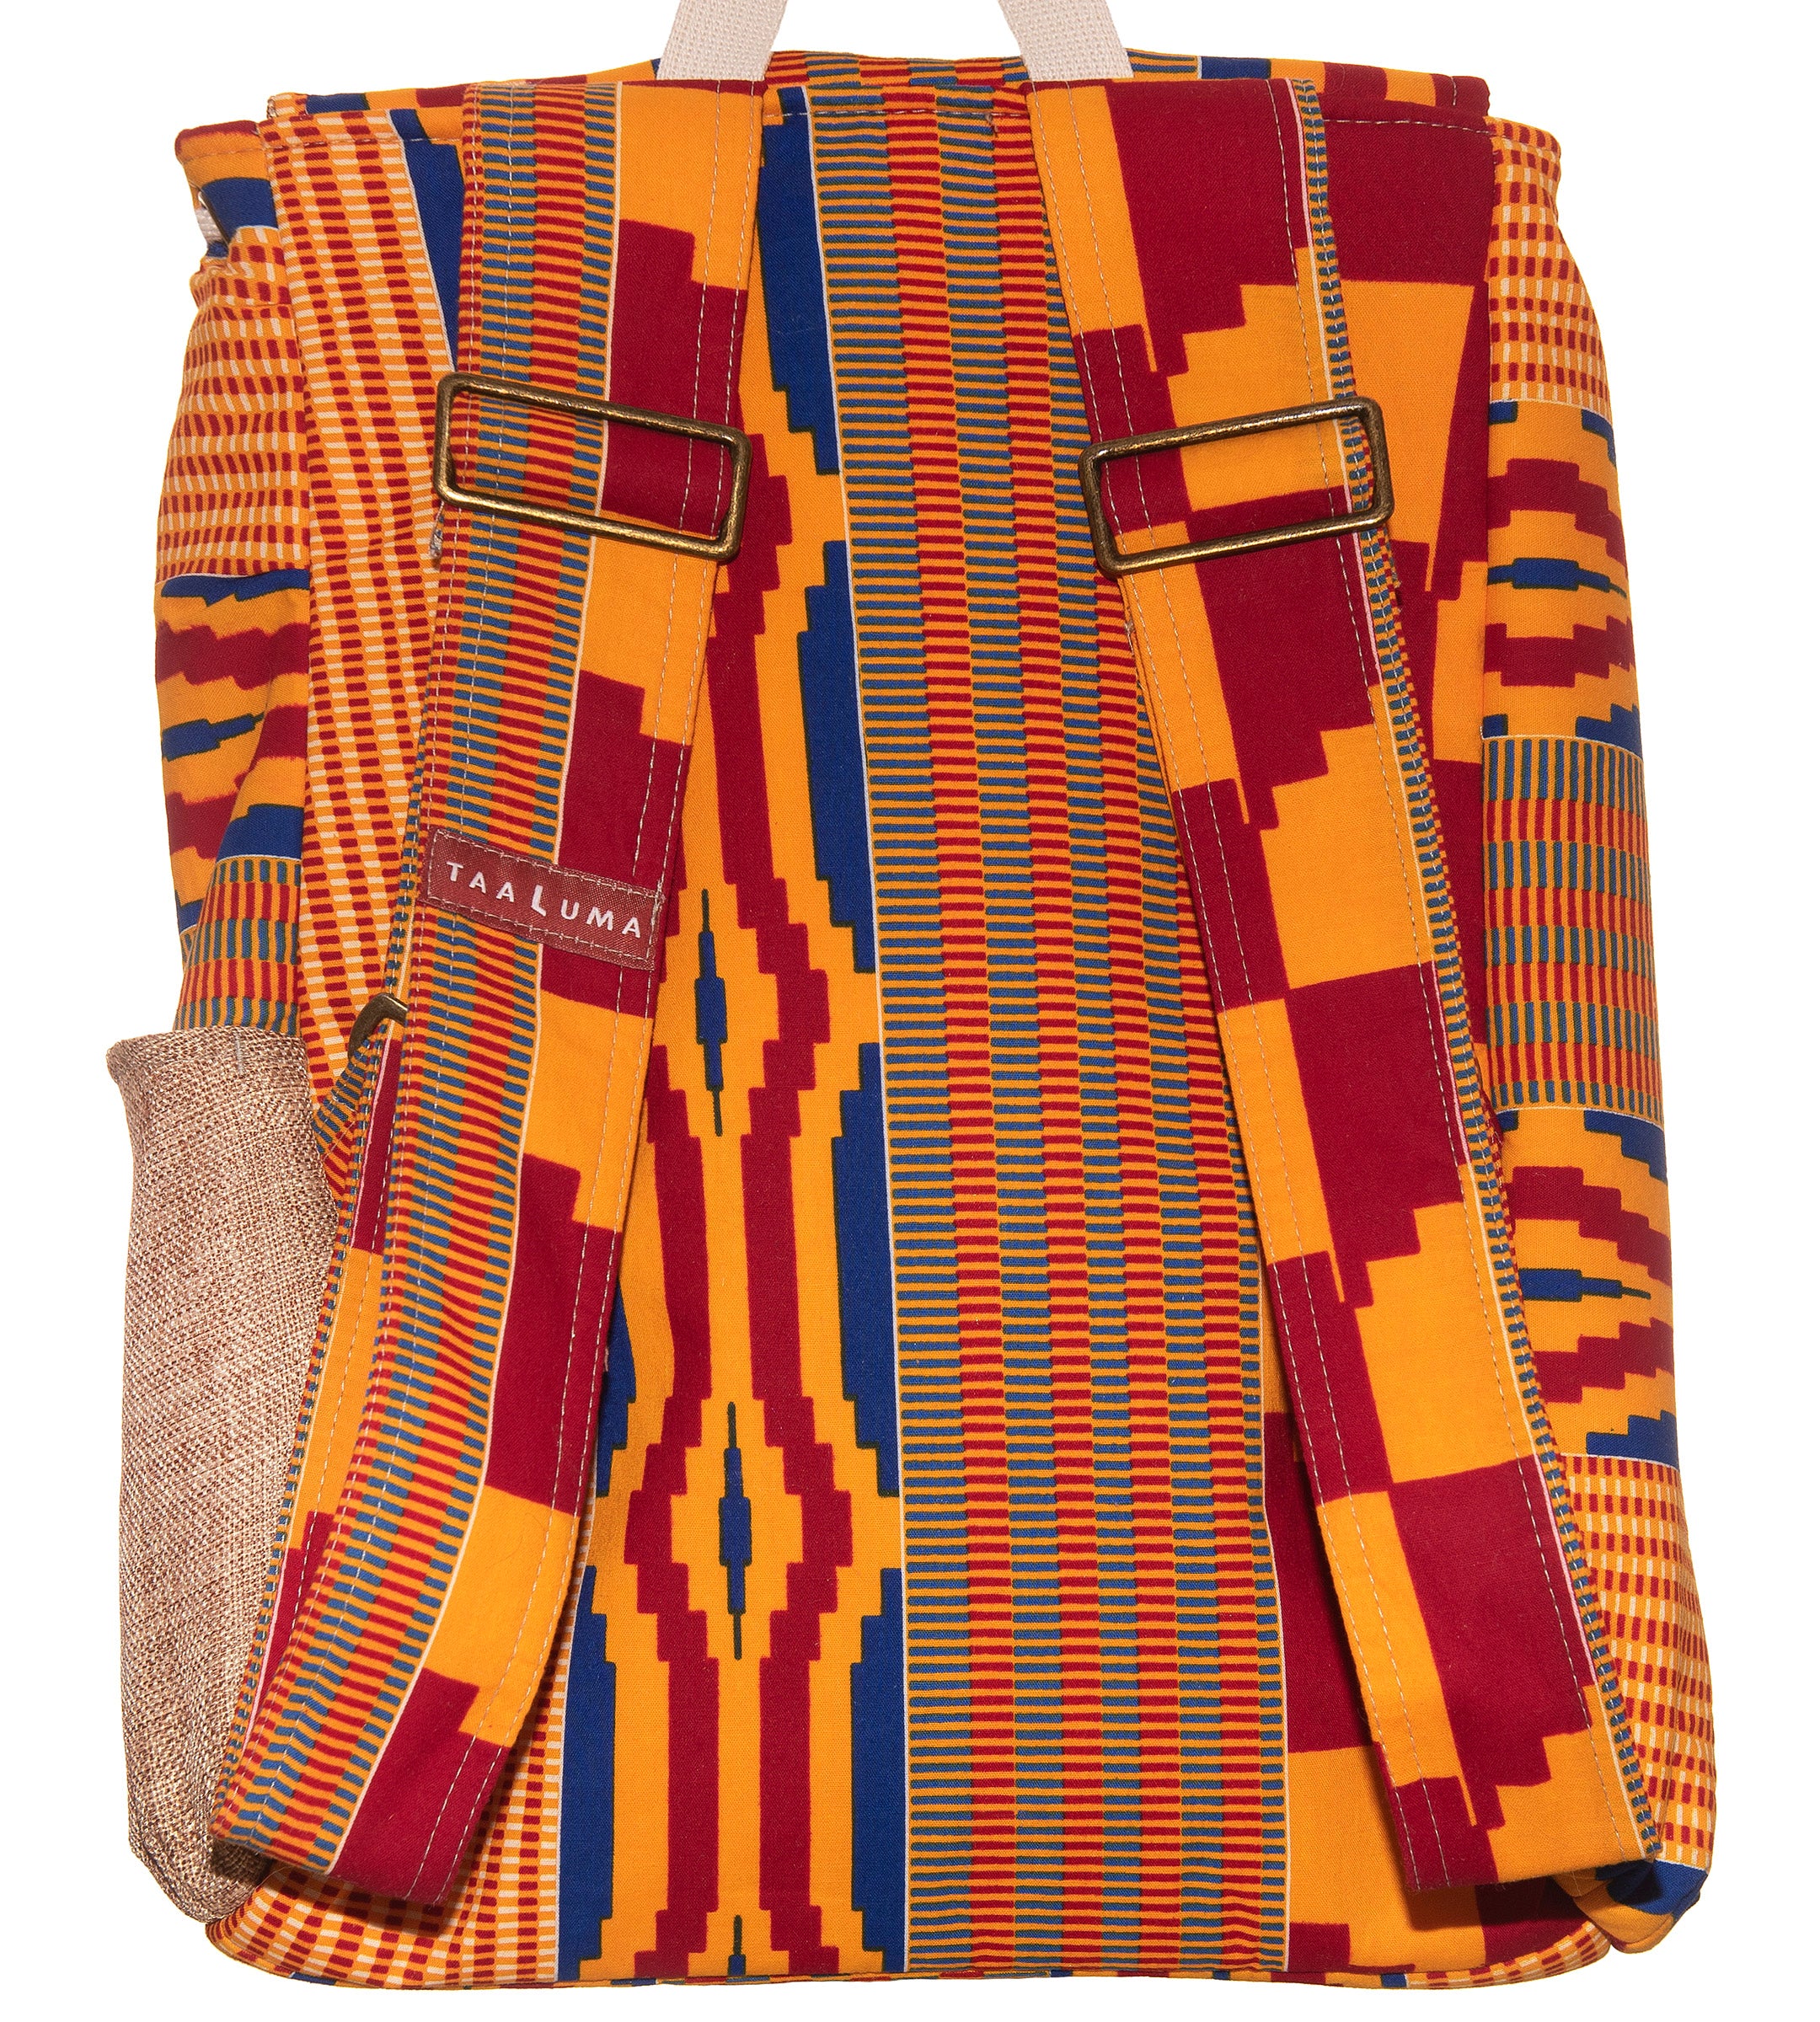 Ghana Tote (by Karen Duca)